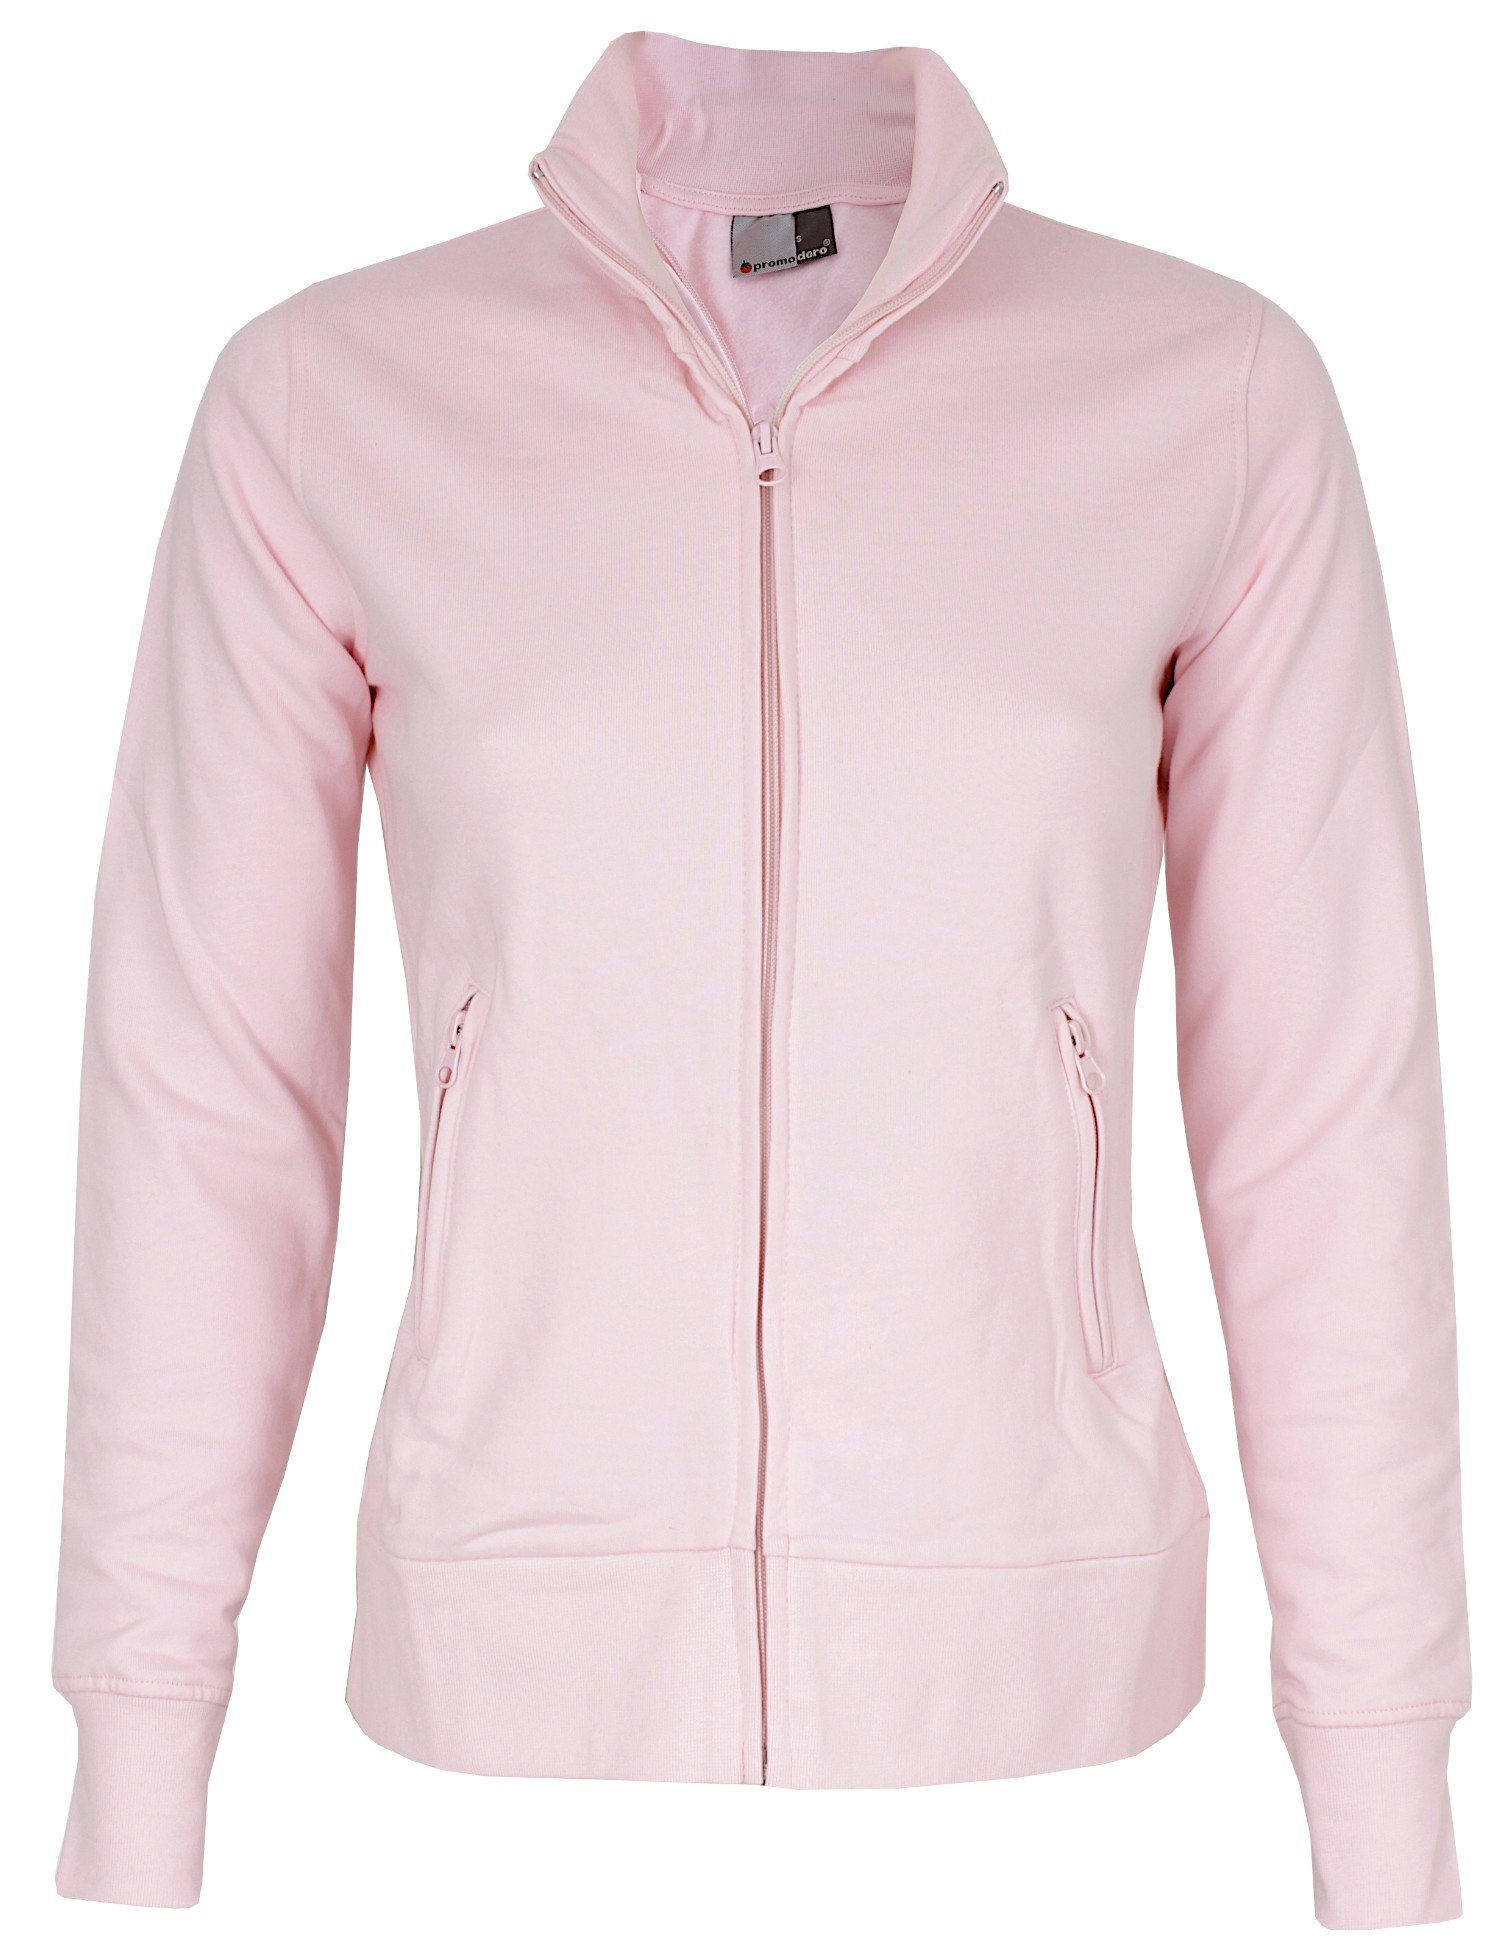 Promodoro Sweatjacke Jacket Stand-Up Collar mit angerauter Innenseite und Elasthanbündchen chalk pink